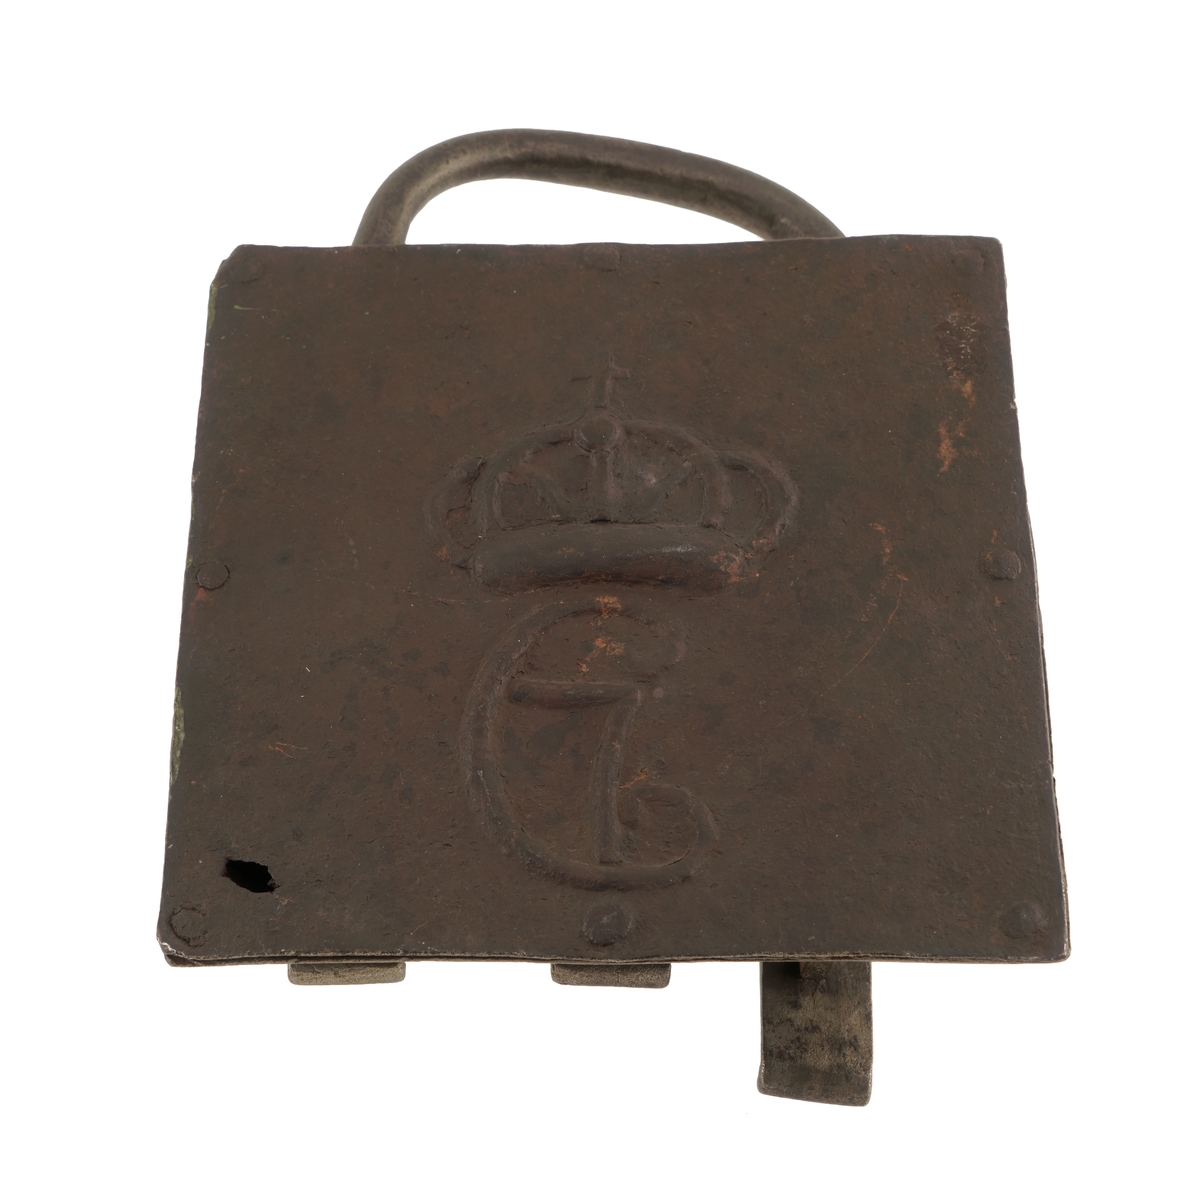 Lås (hengelås) av jern, med tre rette (rektangulære) beslag, hvorav det ene er enden av låsens bøyle.
Kvadratisk.